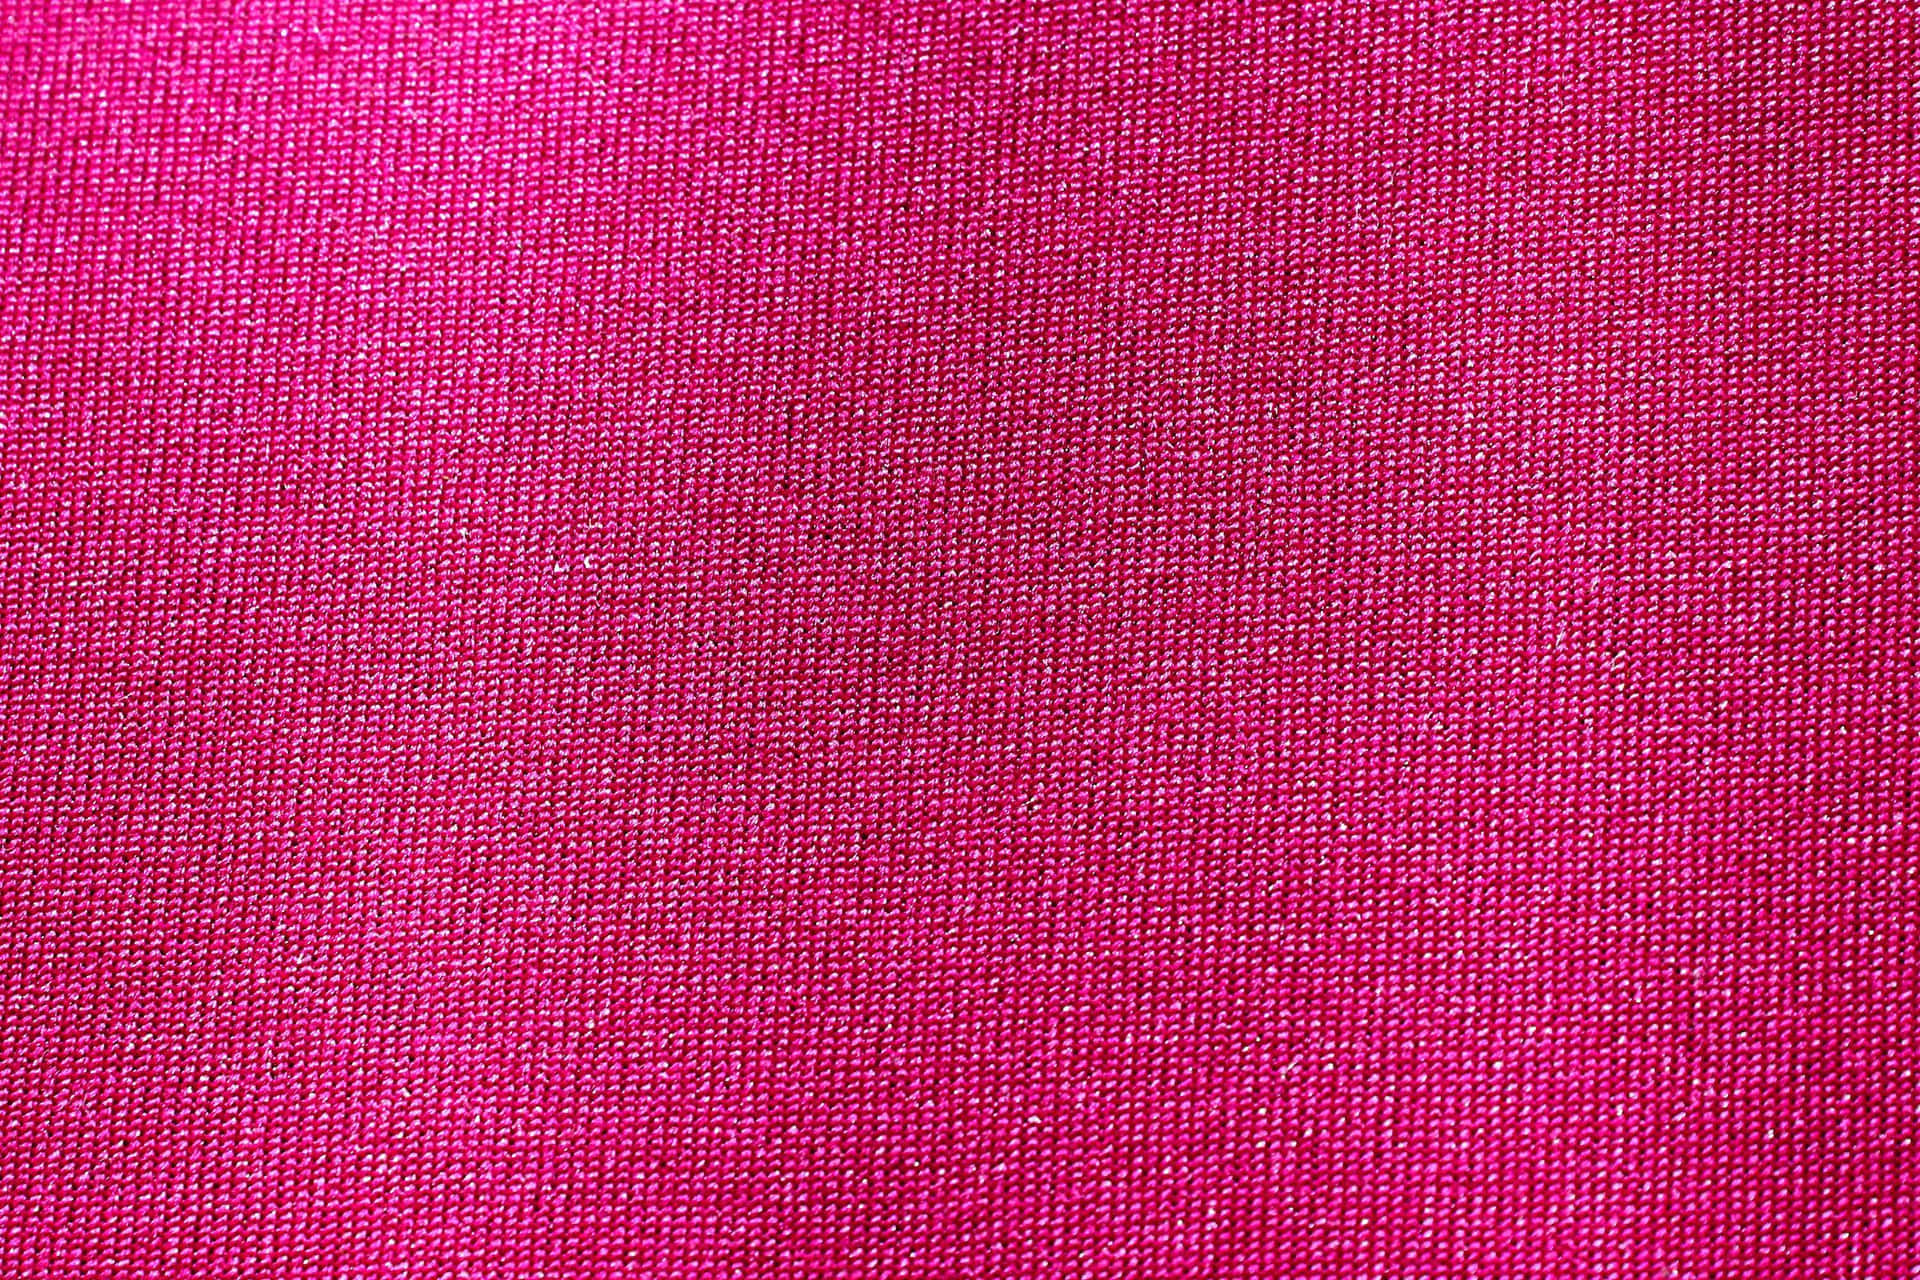 Fondode Pantalla Elegante De Textura Rosa. Fondo de pantalla